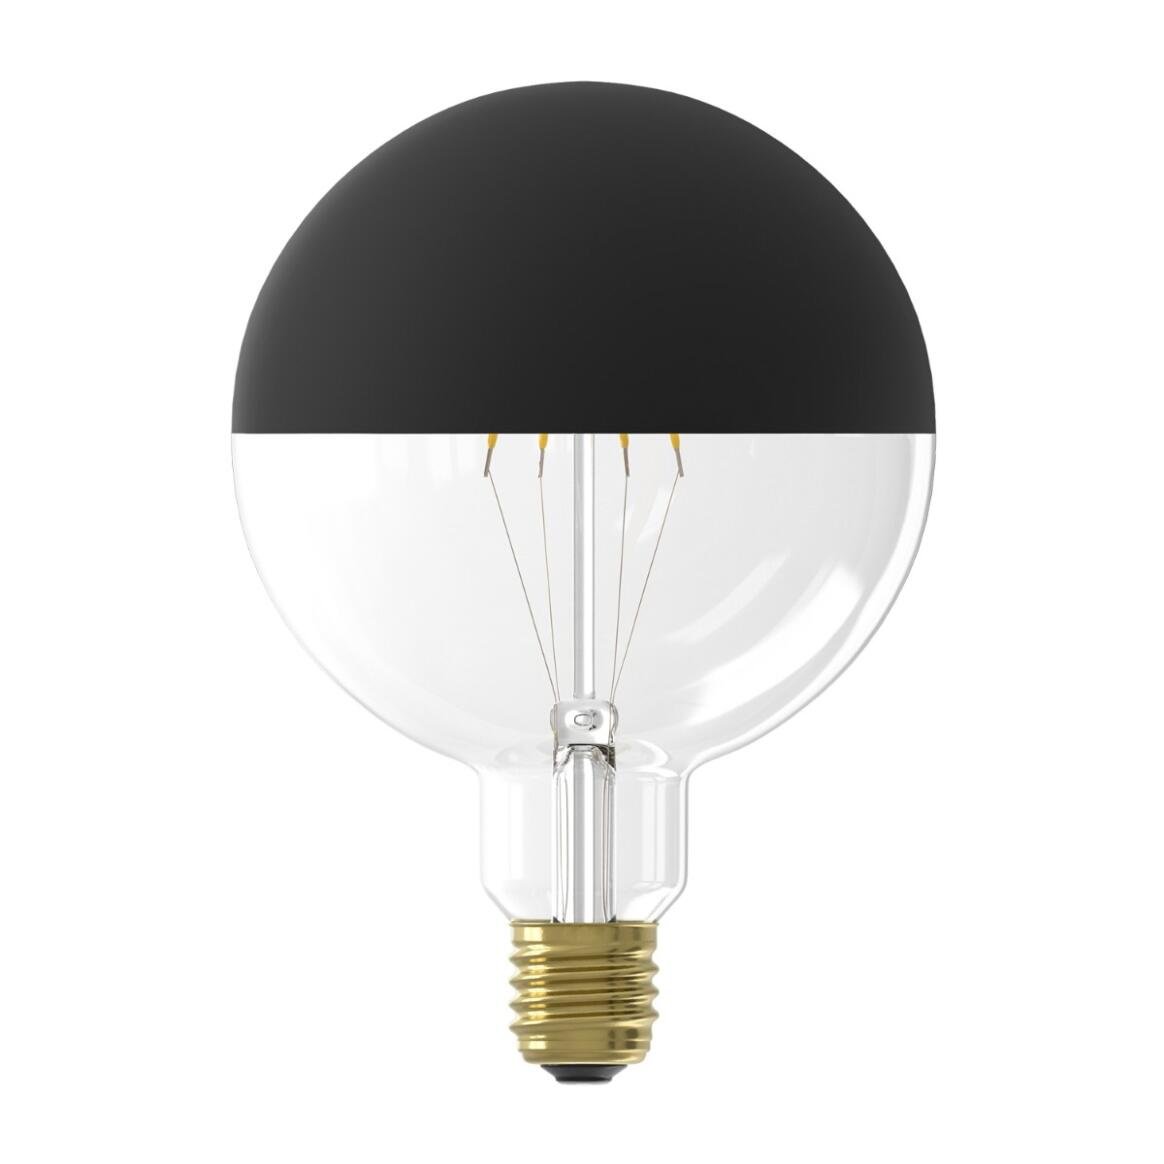 Ampoule LED filament miroir noir variable d'intensité E27 4W 2000k 190lm 12.5cm main product image